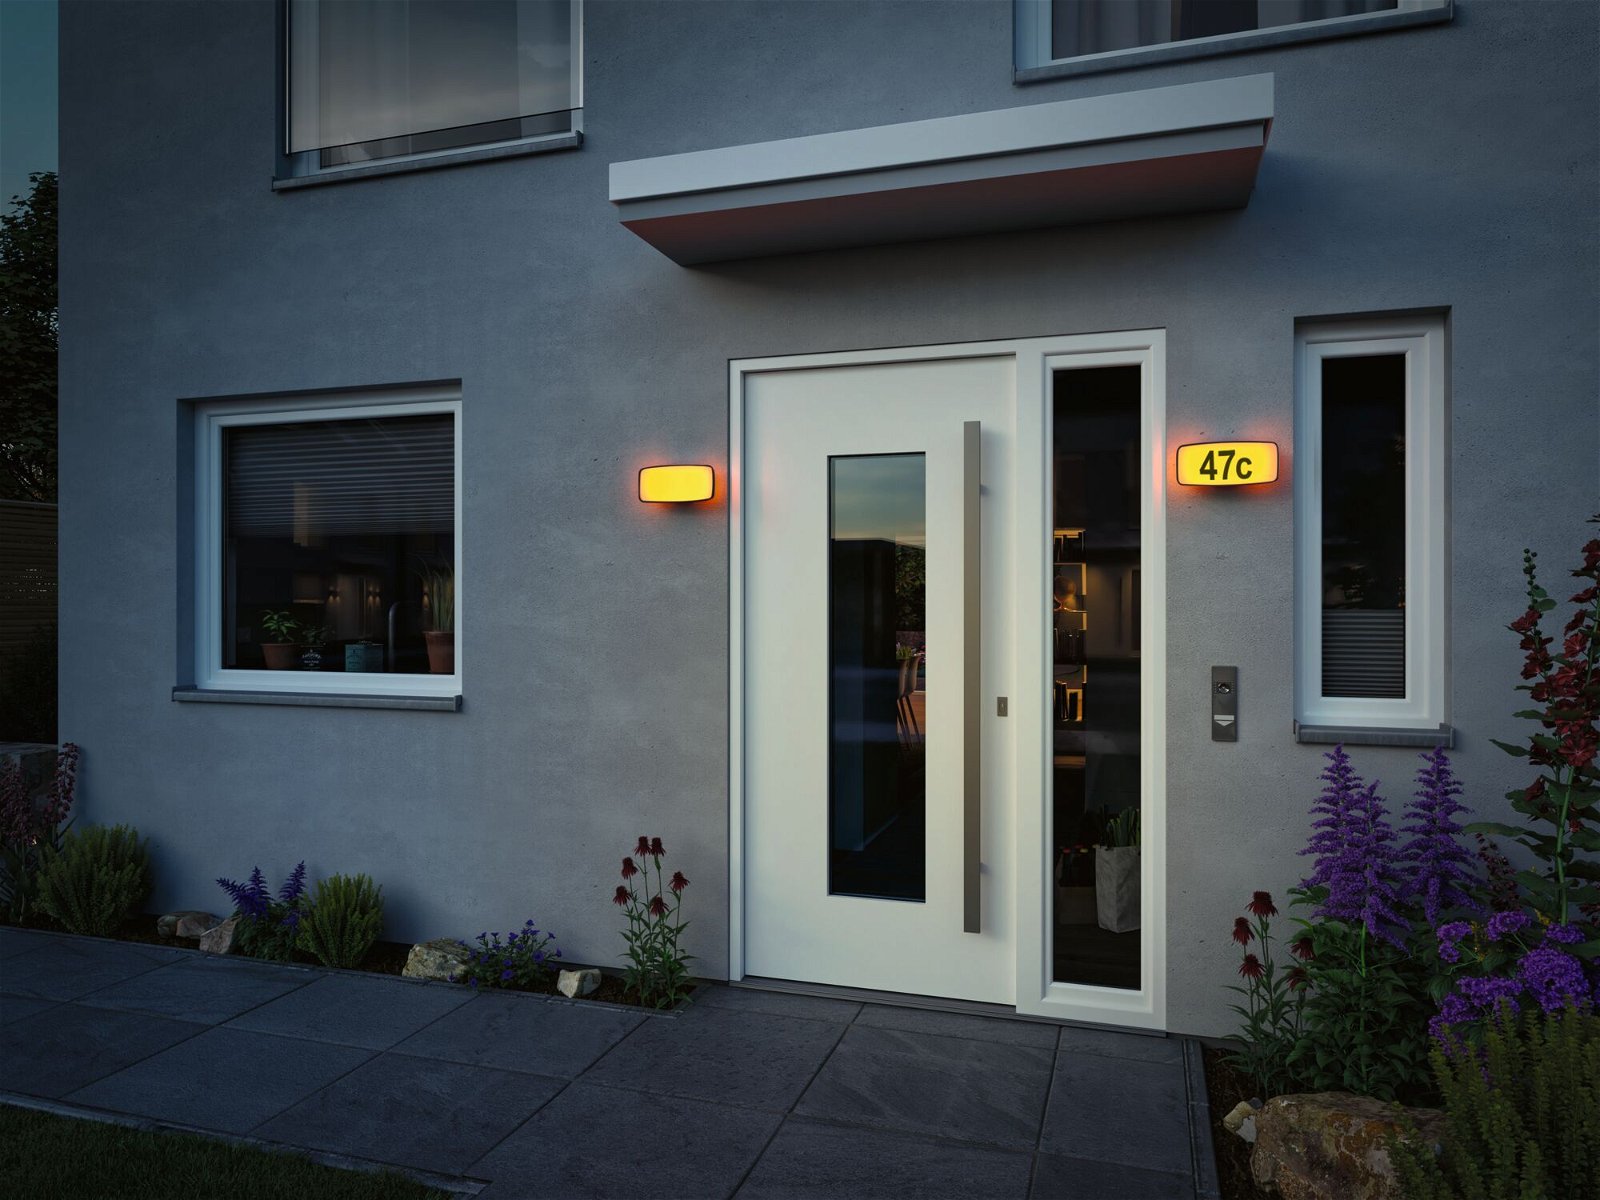 LED-huisnummerverlichting Smart Home Zigbee Sheera schemersensor insectvriendelijk\n IP44 276x73mm Tunable Warm 6,5W 430lm 230V Antraciet Kunststof